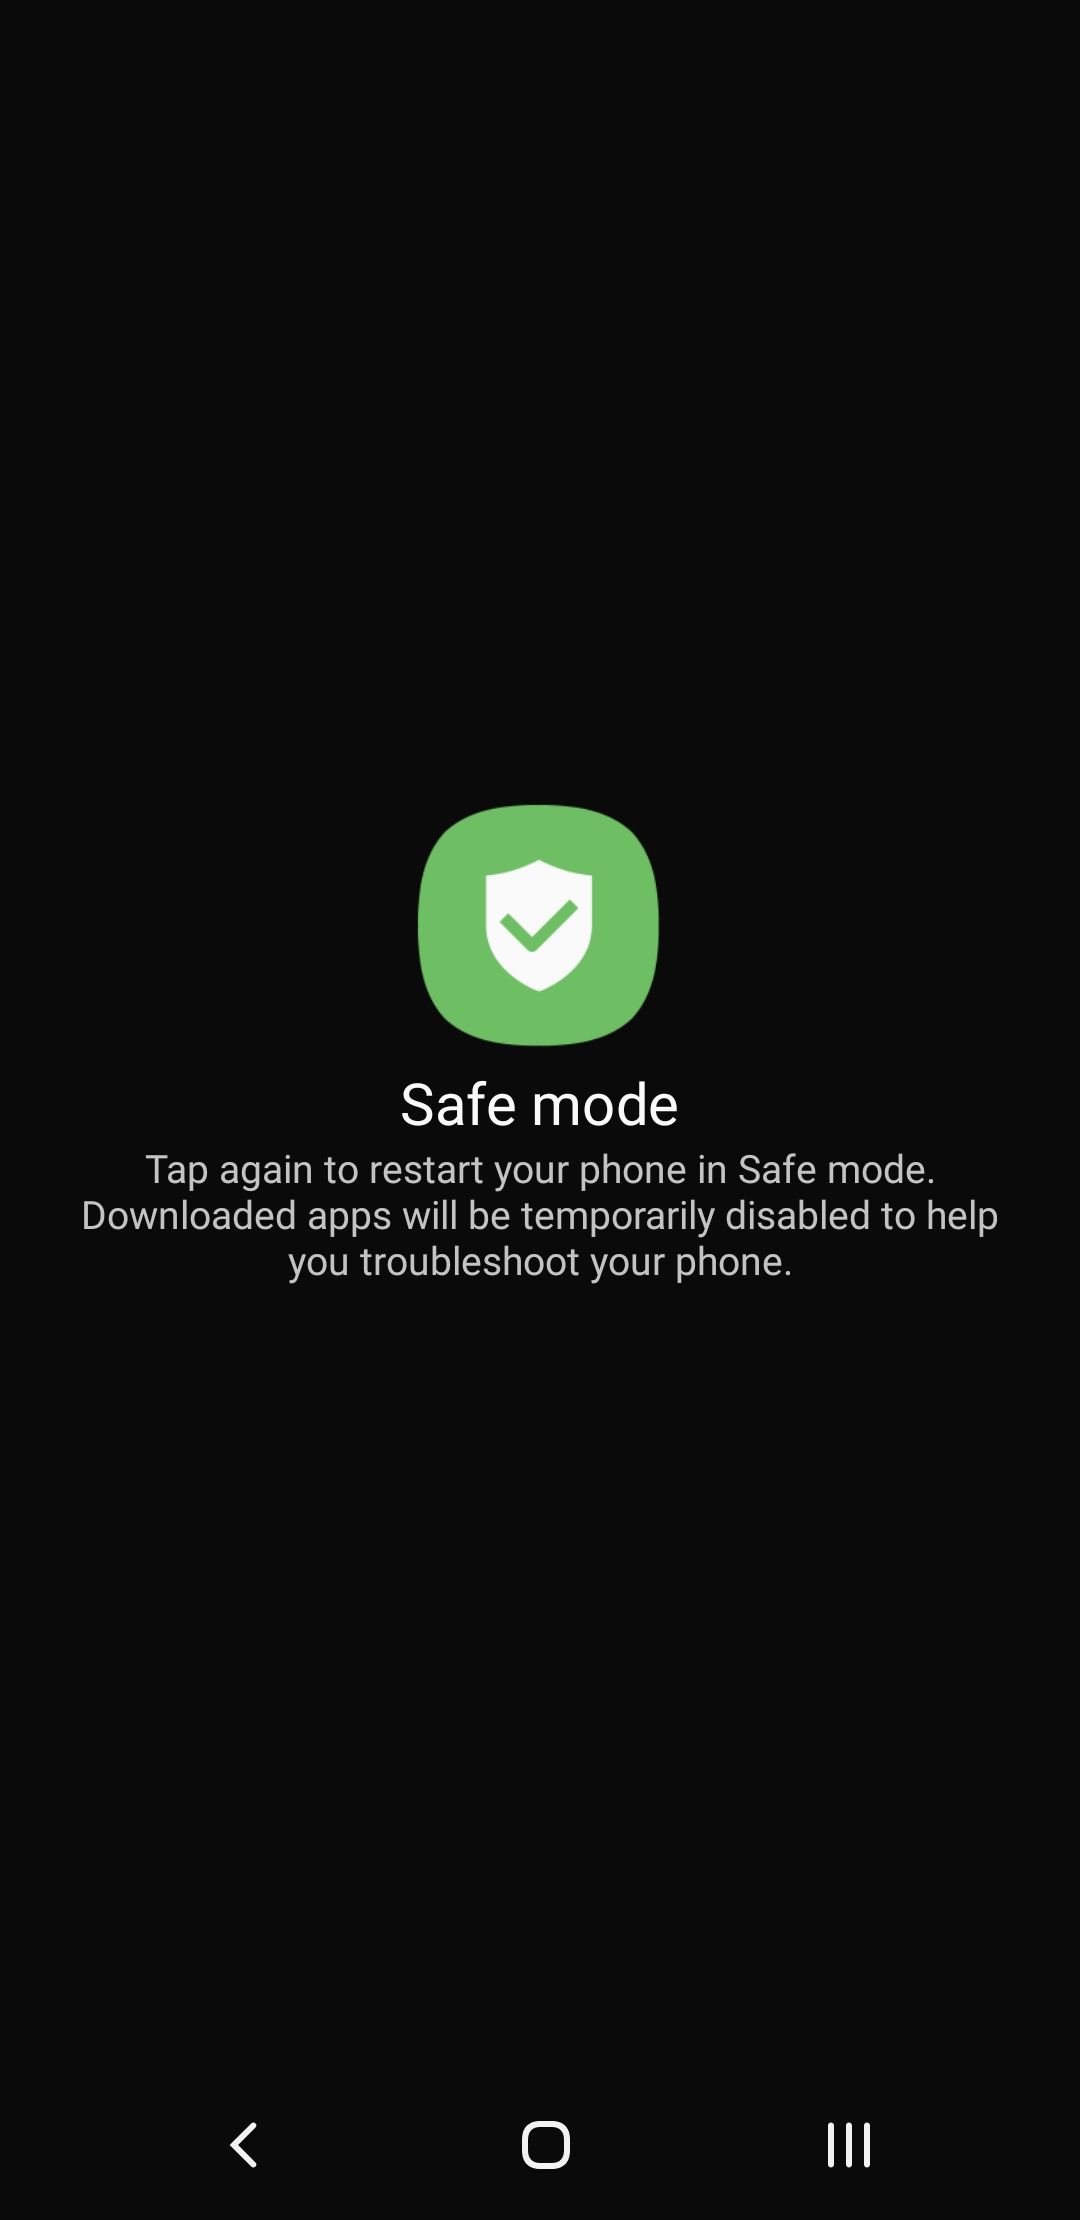 safe mode prompt on samsung phone